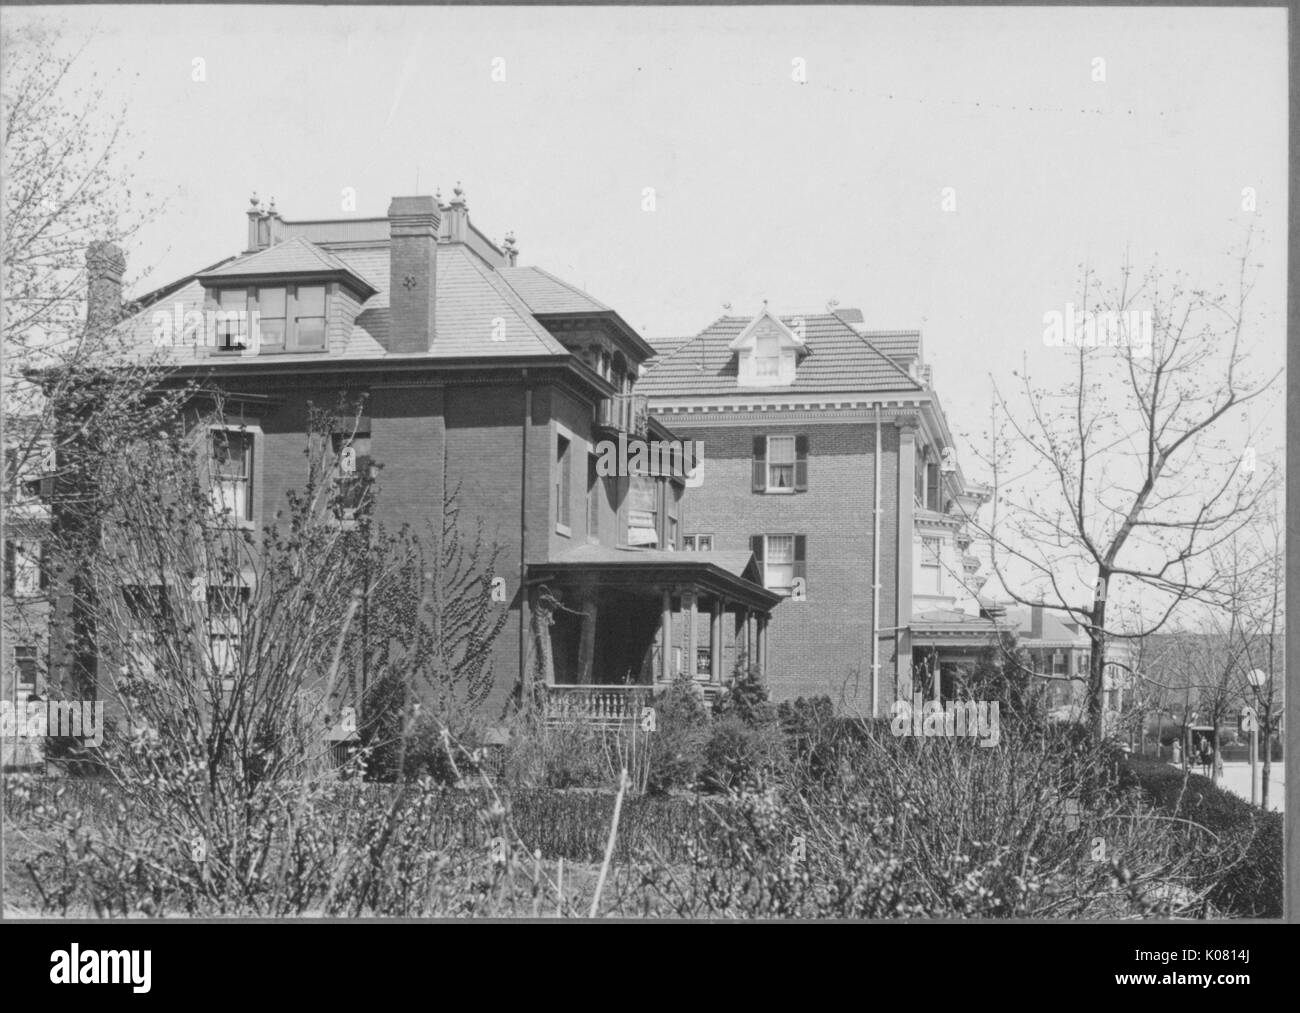 Seitenansicht des zwei-stöckige Häuser in der Nähe von Roland Park und Guilford, United States, 1910. Dieses Bild wird von einer Reihe dokumentieren den Bau und den Verkauf von Wohnungen in der Roland Park/Guilford Nachbarschaft von Baltimore, einer Straßenbahn Vorort und eines der ersten geplanten Gemeinschaften in den Vereinigten Staaten. Stockfoto